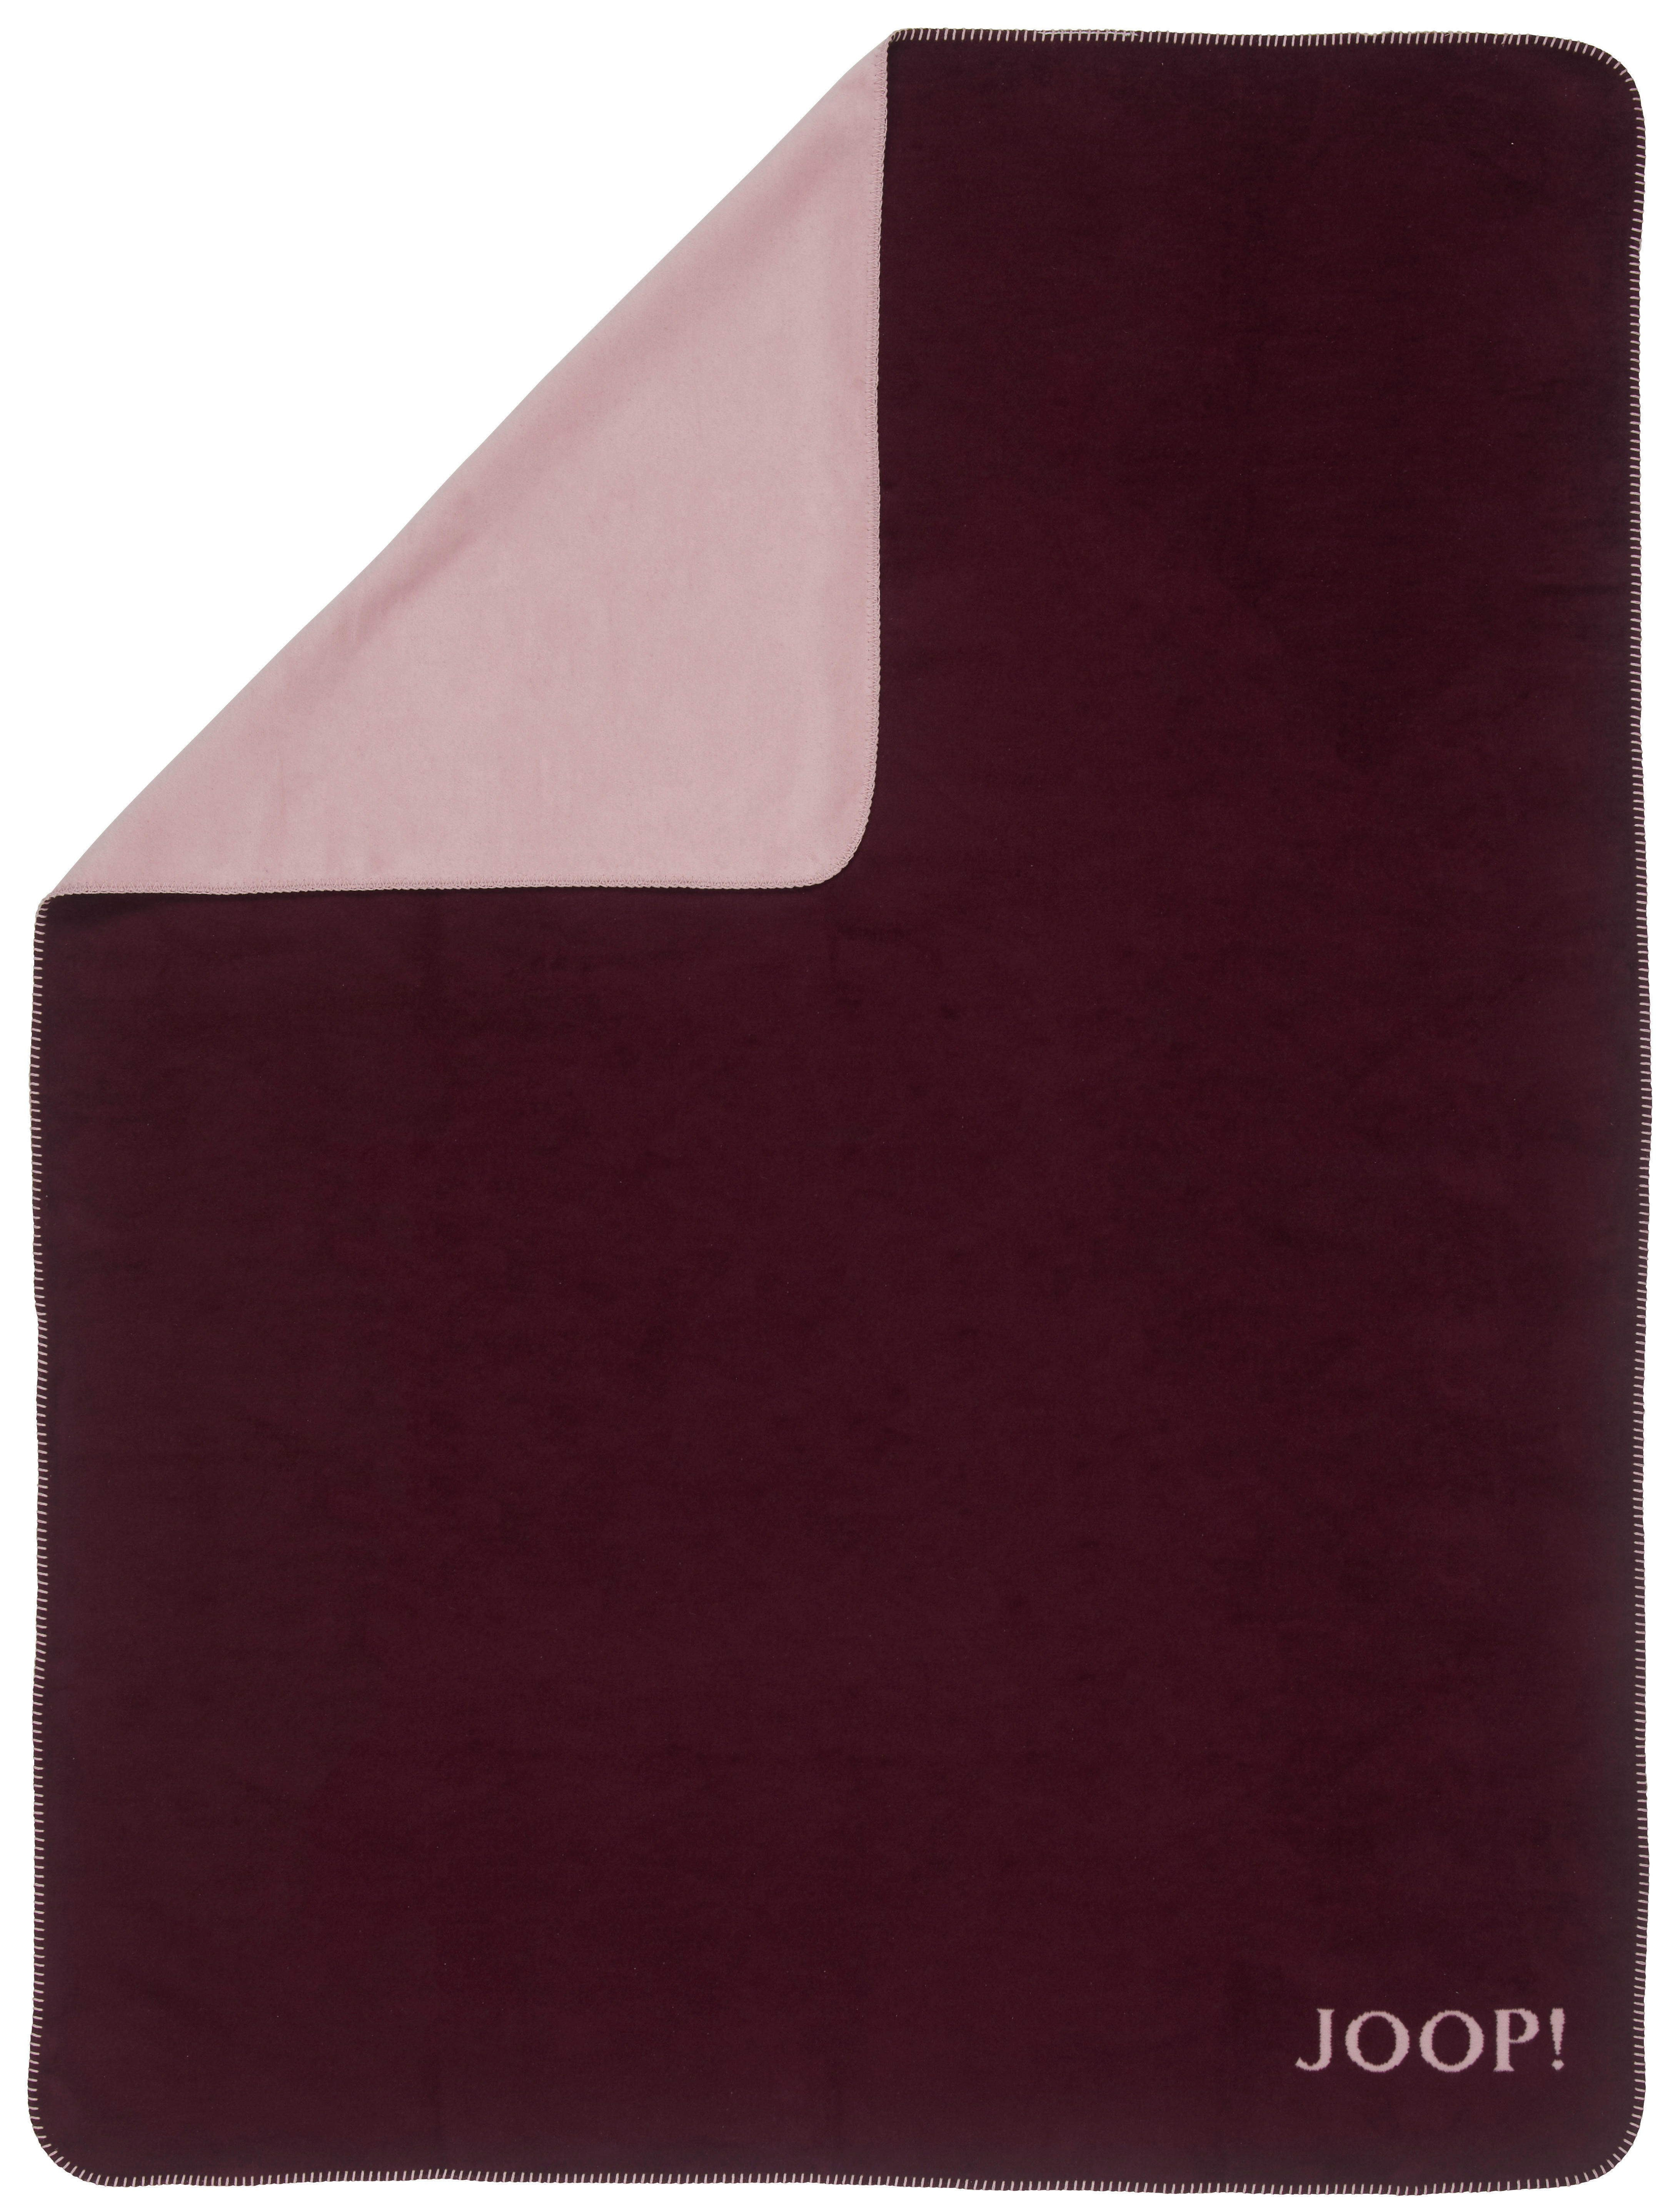 PLAID 150/200 cm  - Bordeaux/Rosa, Design, Textil (150/200cm) - Joop!